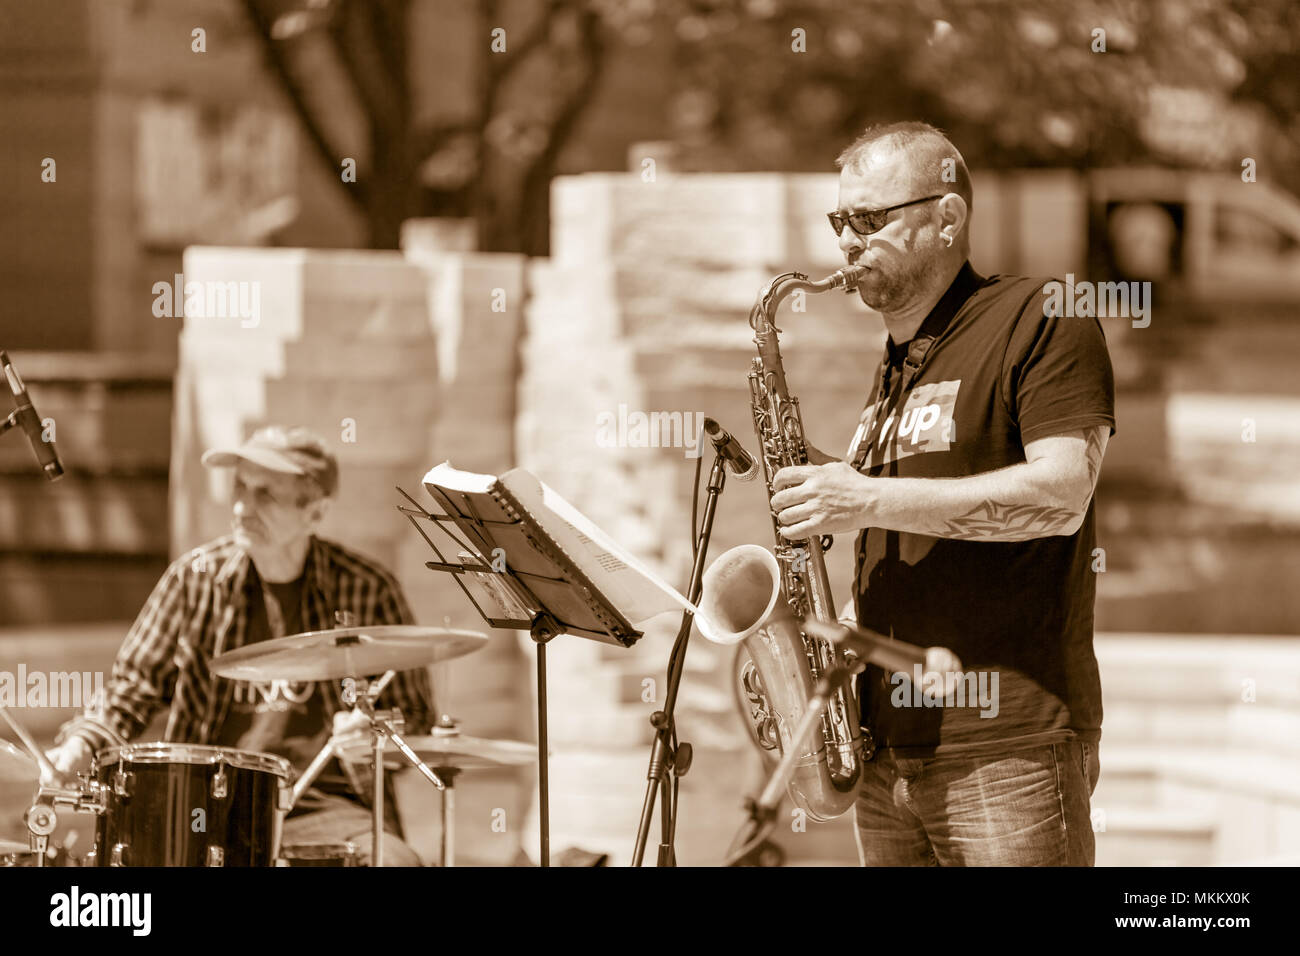 DIMITROVGRAD, Bulgarien - 30 April, 2018: Männlich Saxophonist Solo spielt auf seinem Saxophon an der Straße Konzert Veranstaltung International World Jazz Tag gewidmet Stockfoto